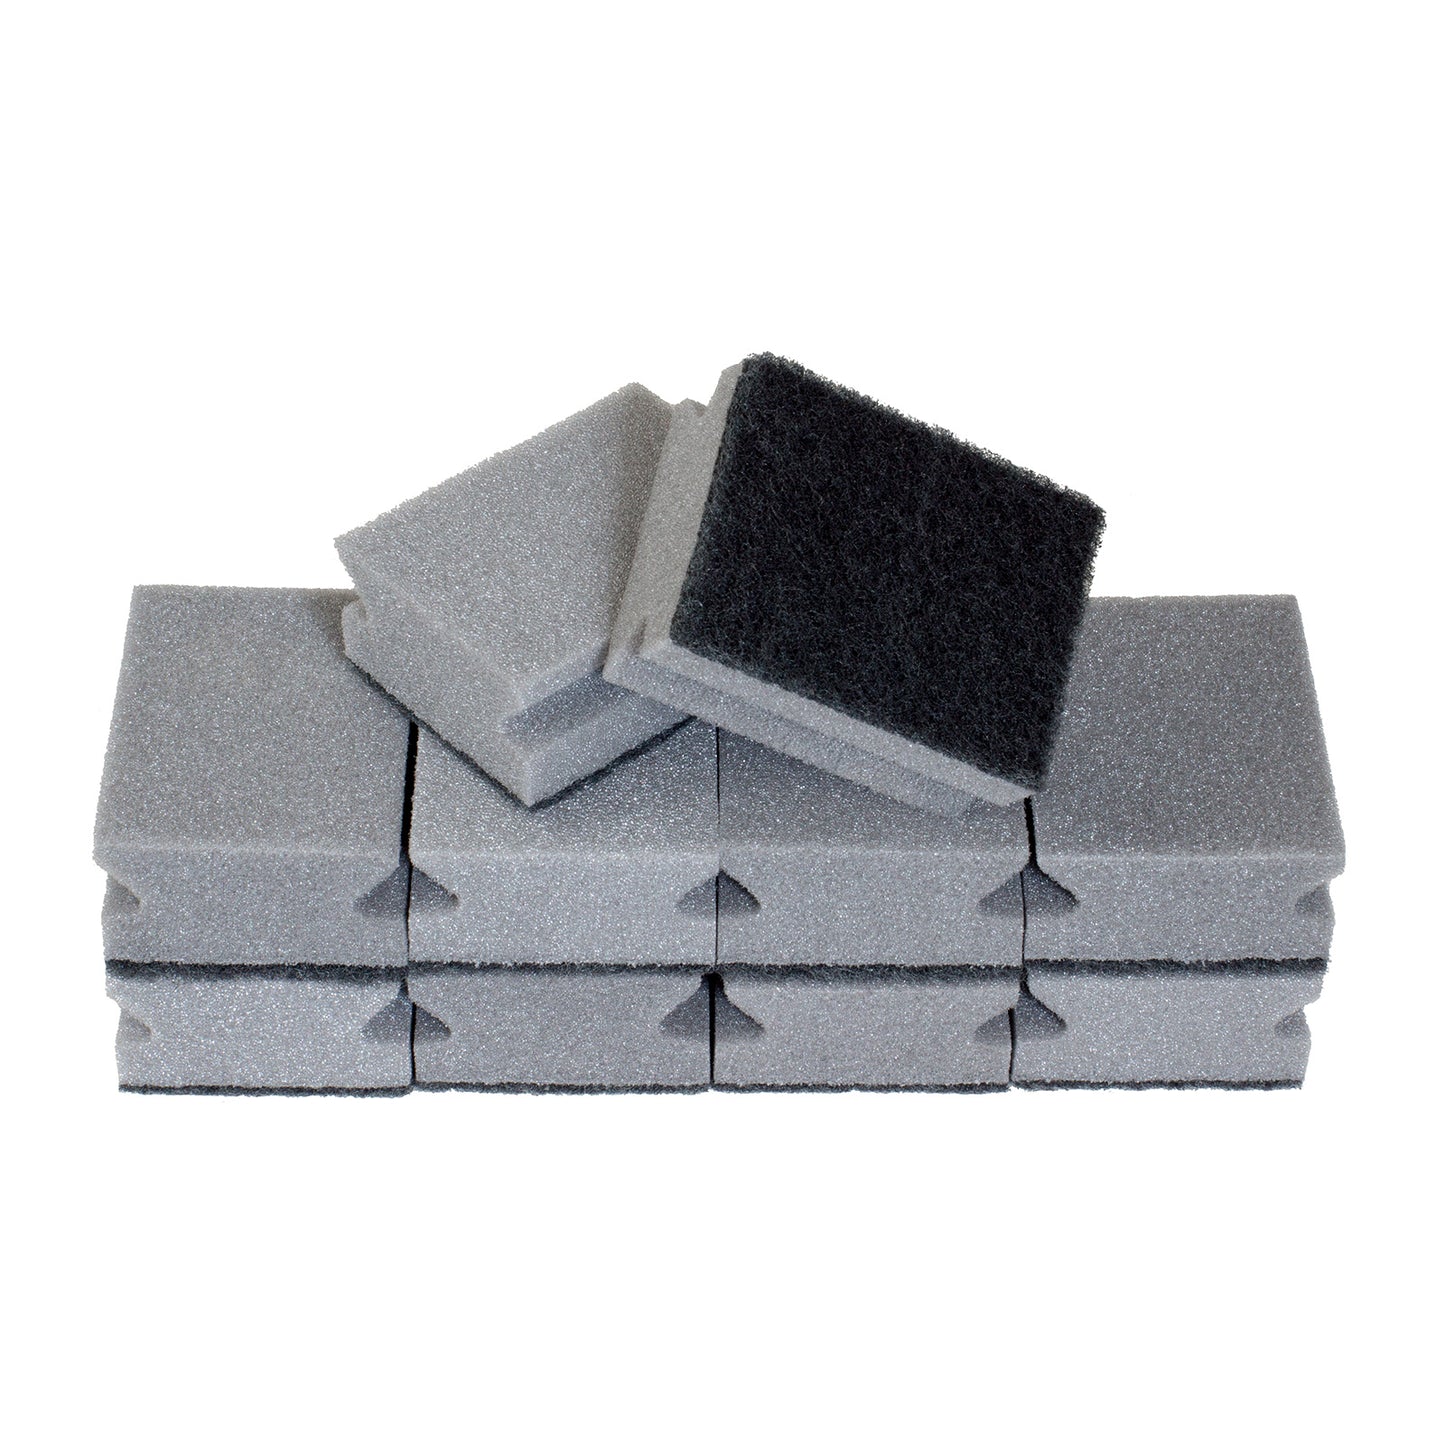 Sonty 10 Stück Topfreiniger Premium- Schwamm mit Schleifmittel- 9 x 7 x 4 cm schwarz/grau